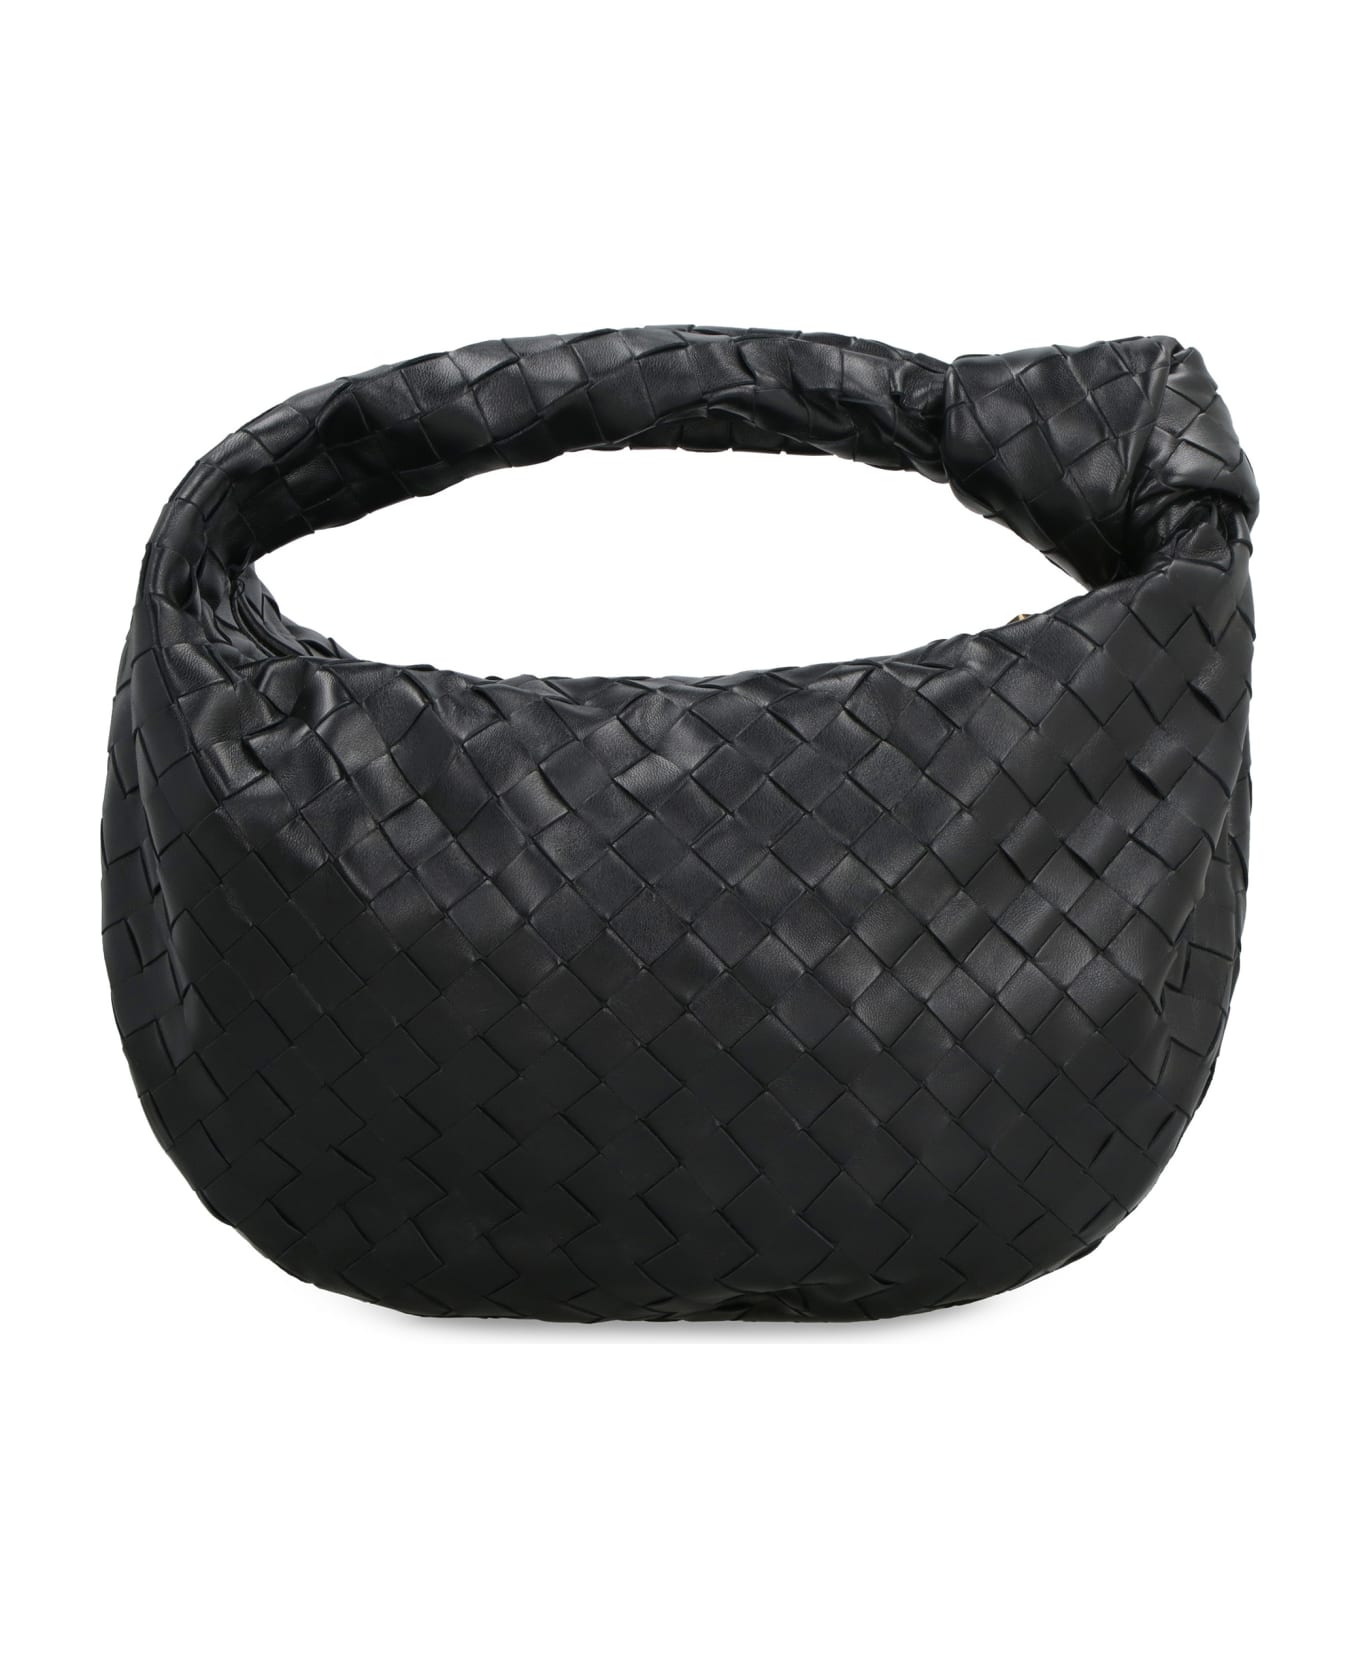 Bottega Veneta Jodie Leather Shoulder Bag - black トートバッグ